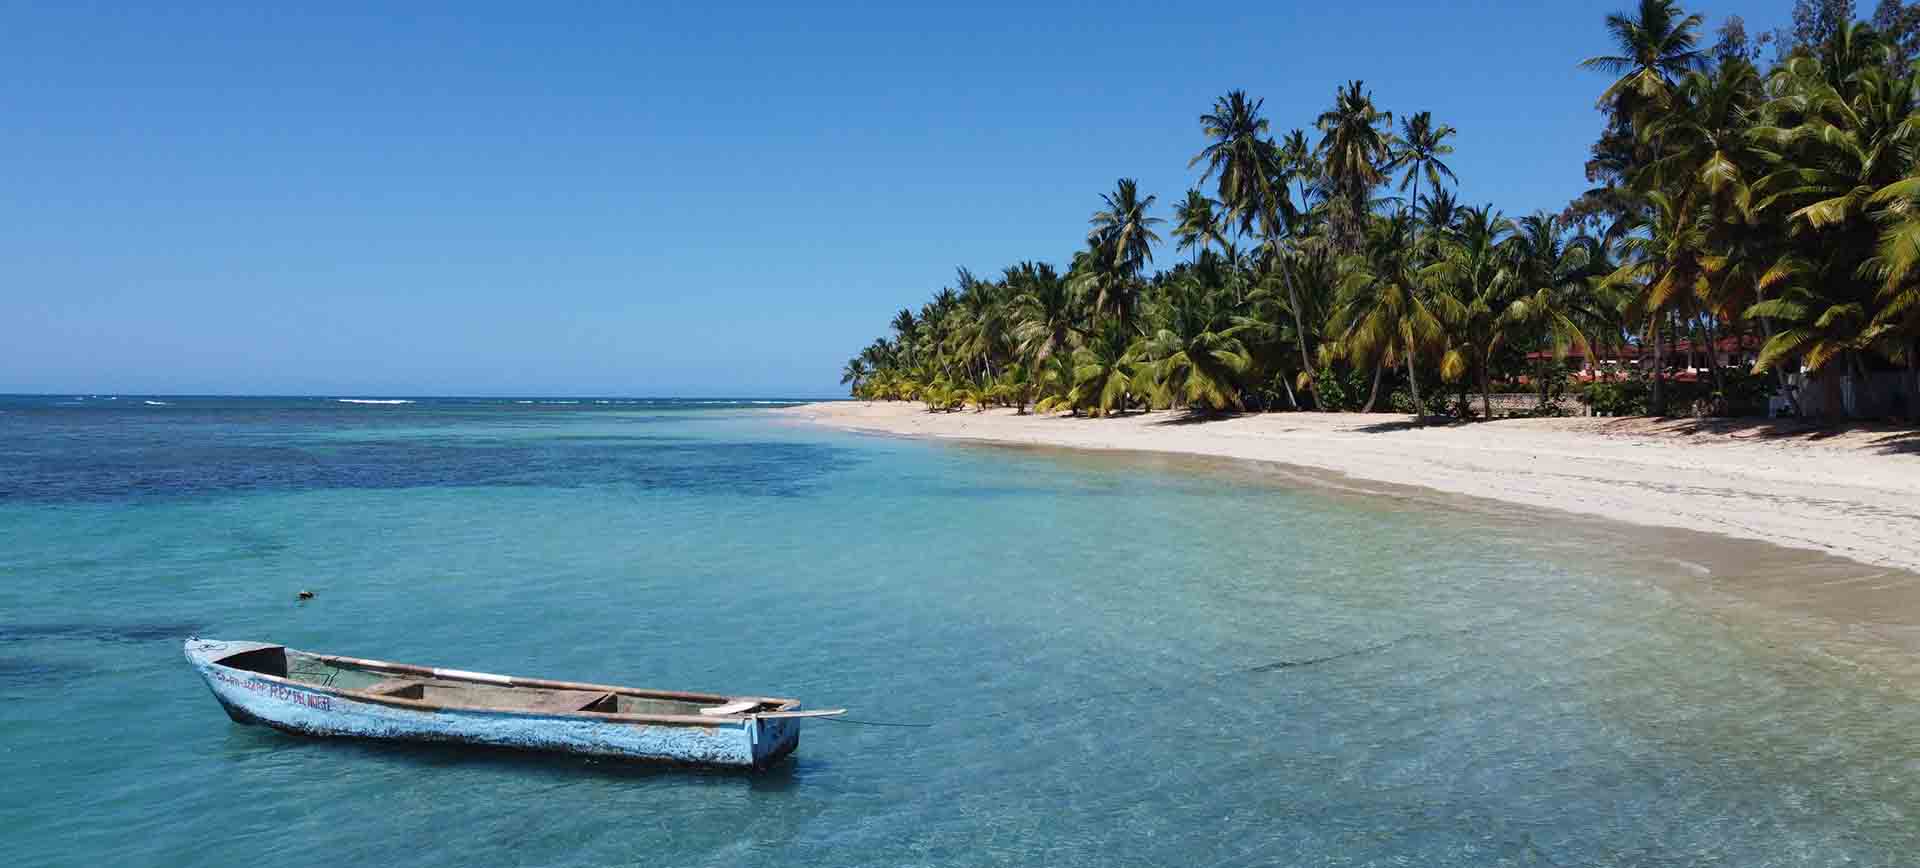  Discover-Las-Terrenas-Ocean-edge-real-estate-dominican-republic